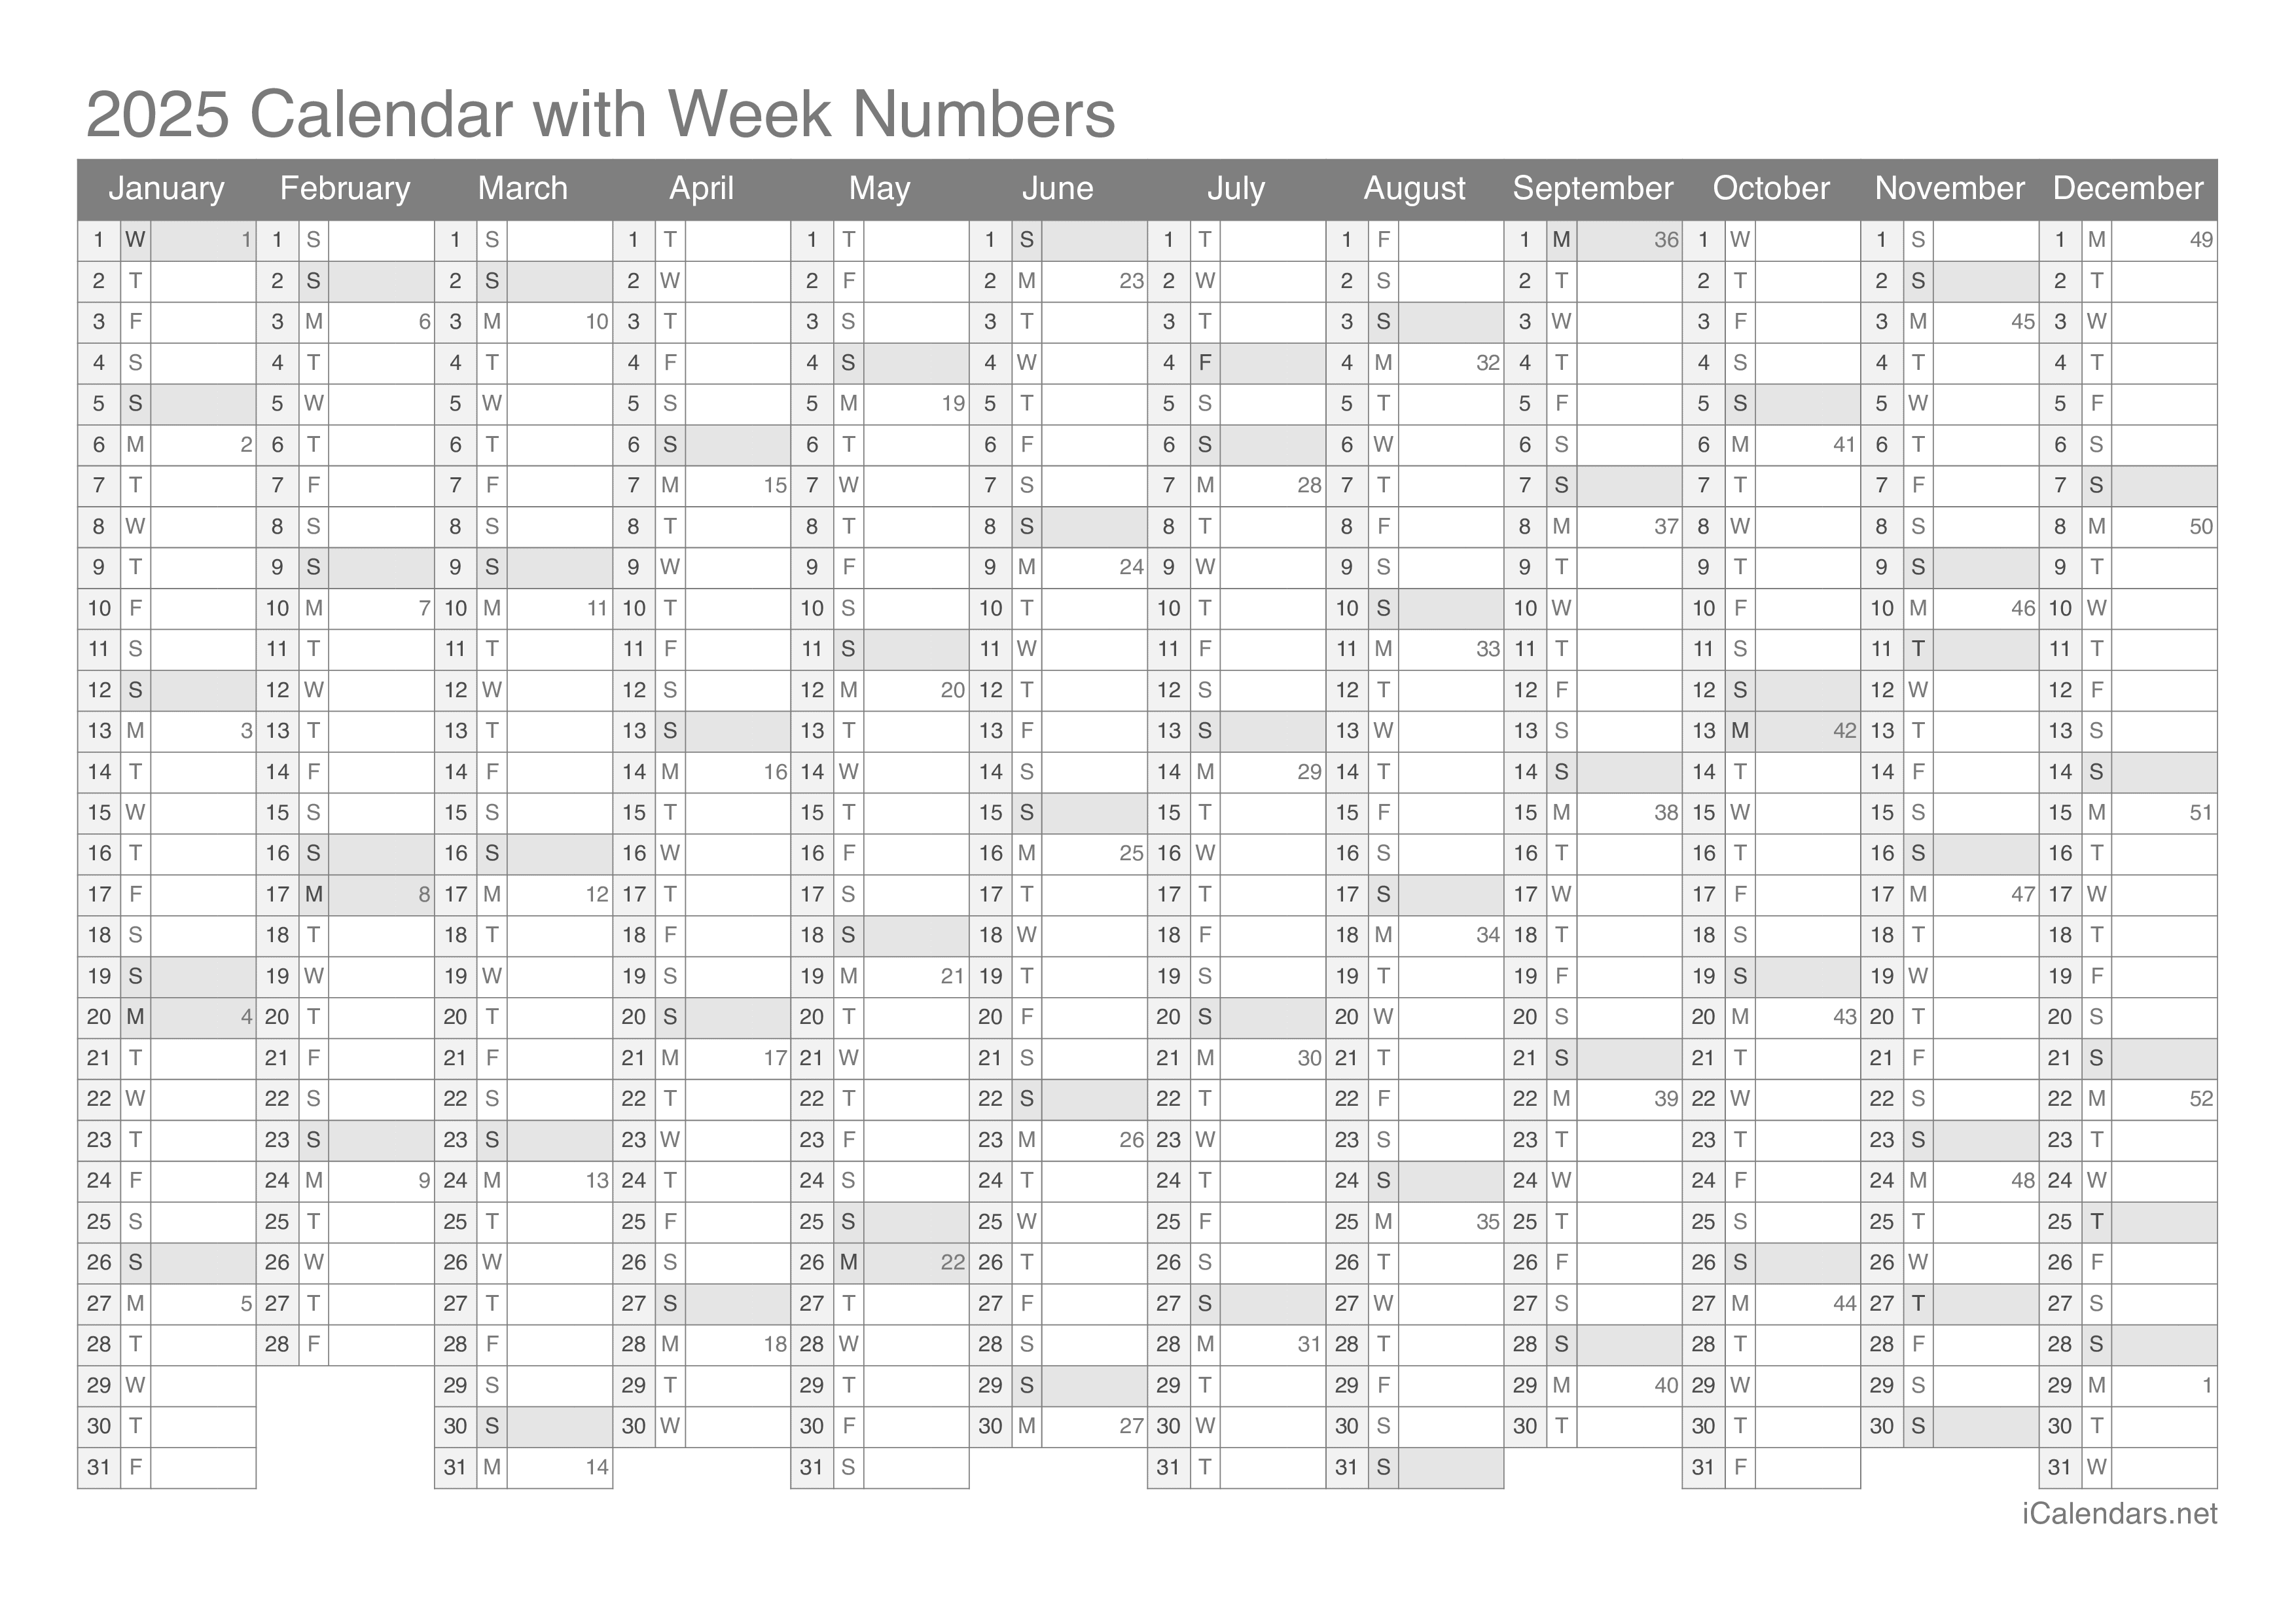 2025 Calendar with week numbers